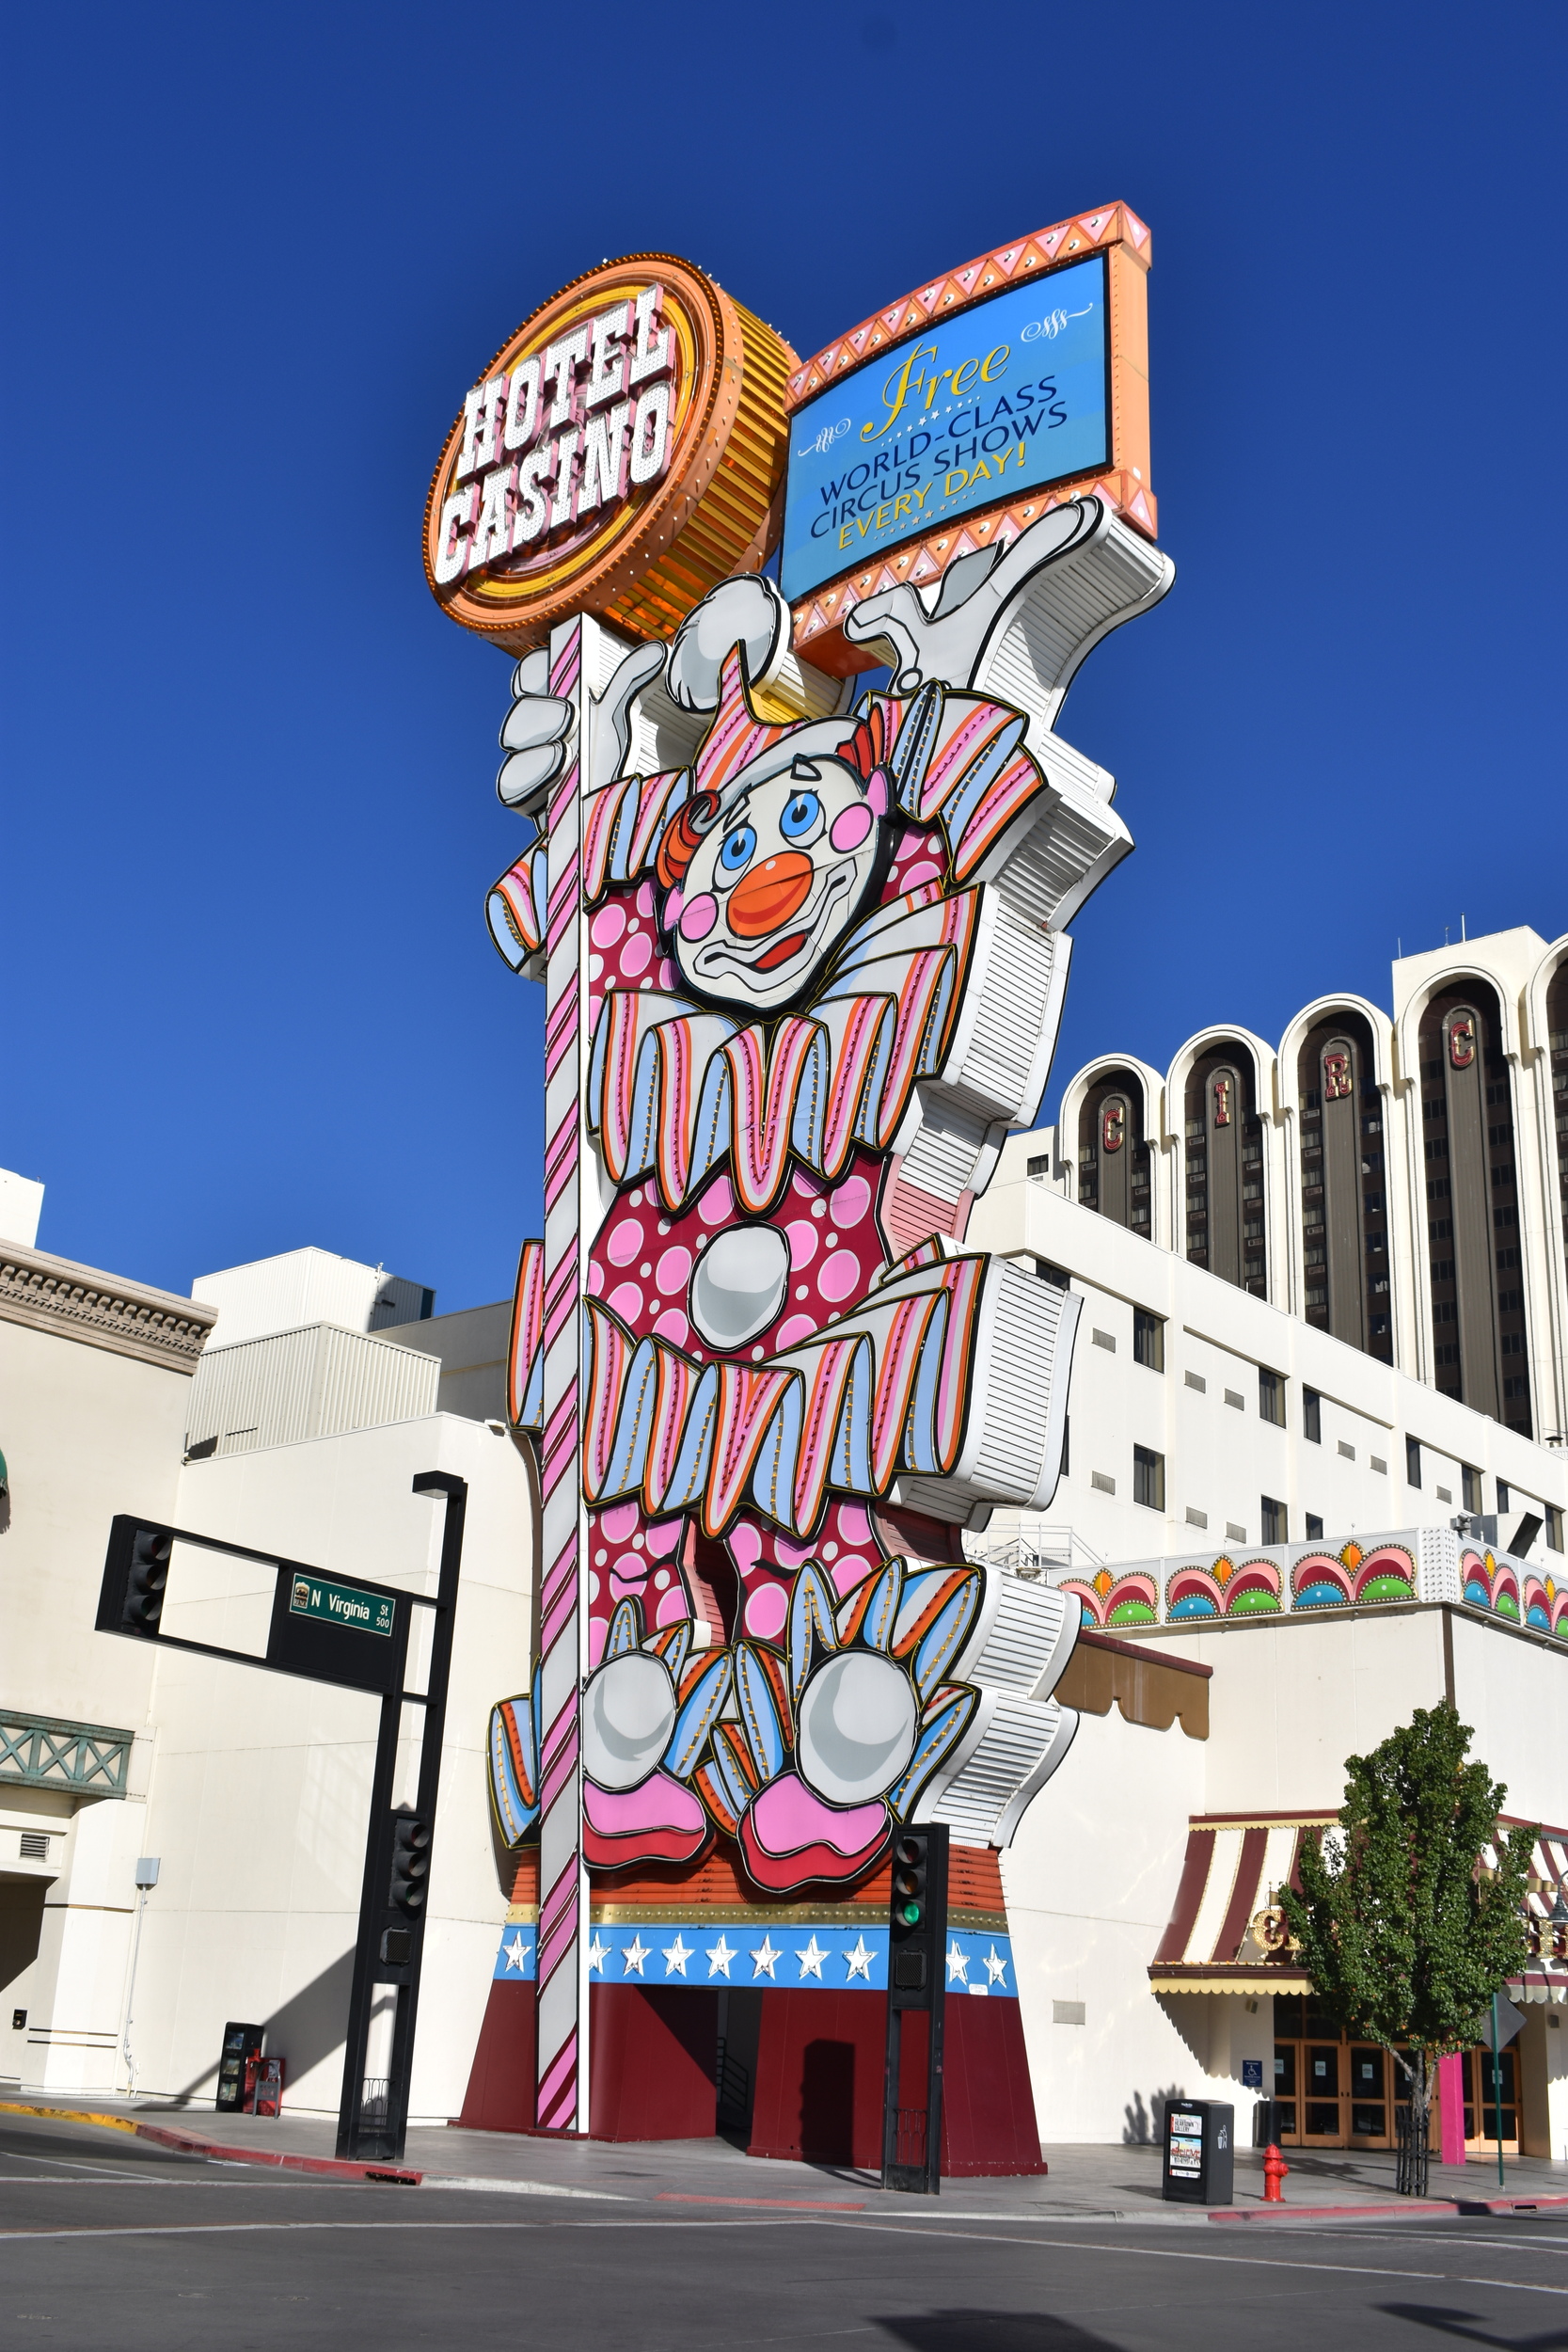 Circus Circus clown sign, Reno, Nevada